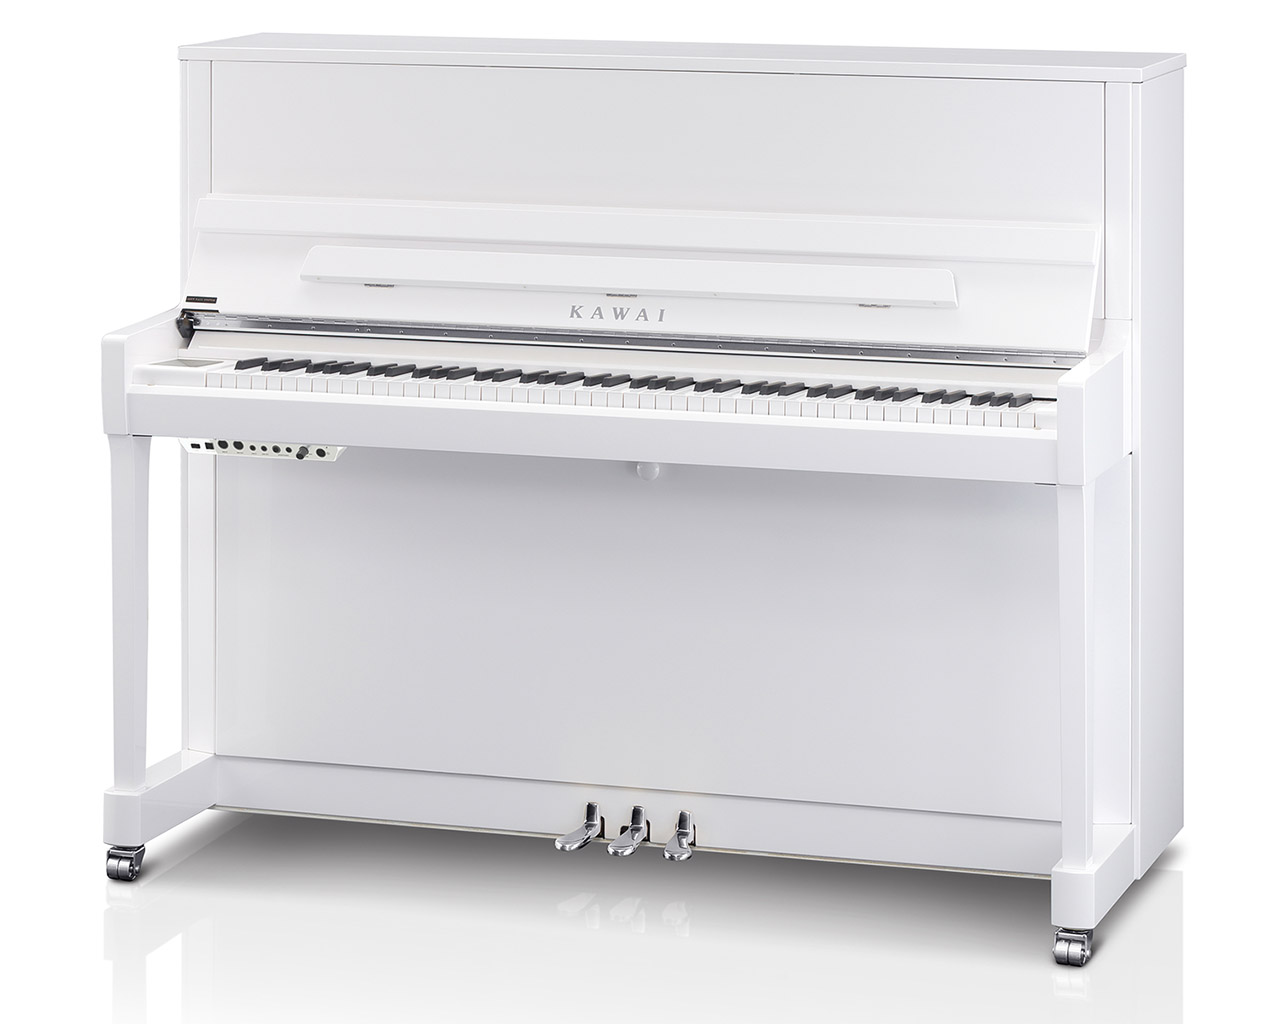 Kawai-K-300-WHP-SL-ATX-4-Klavier-schwarz-Chrom-Pianohaus-Filipski